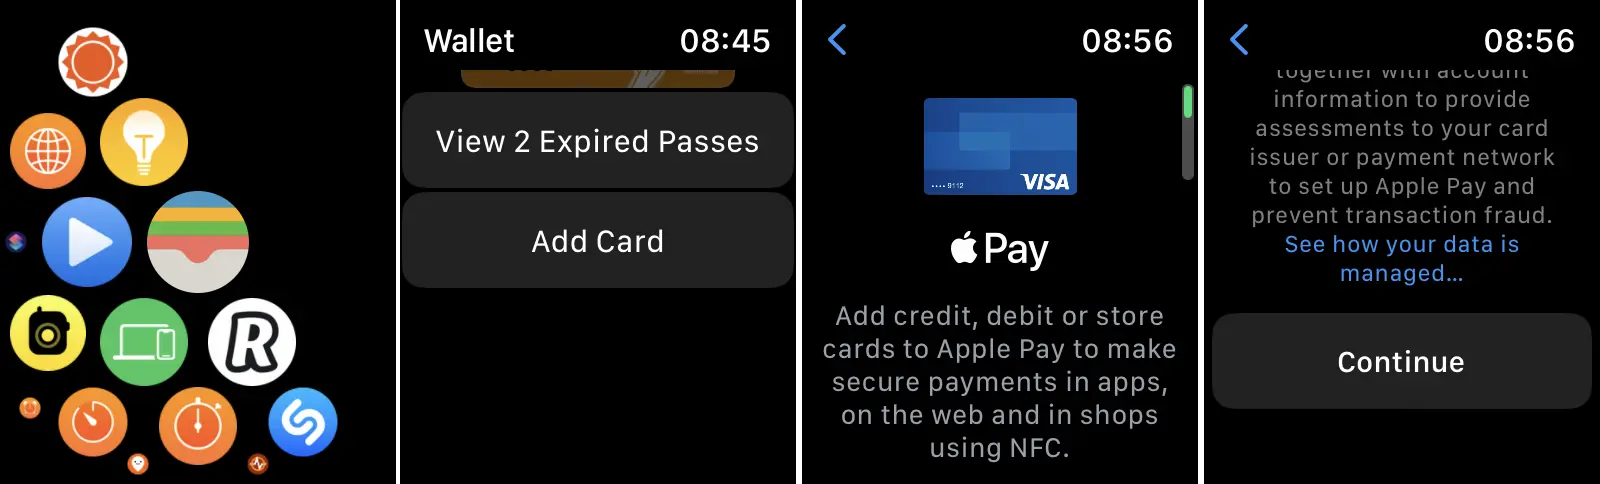 銀行カードを追加する方法 Apple Pay 以下のために Apple Watch